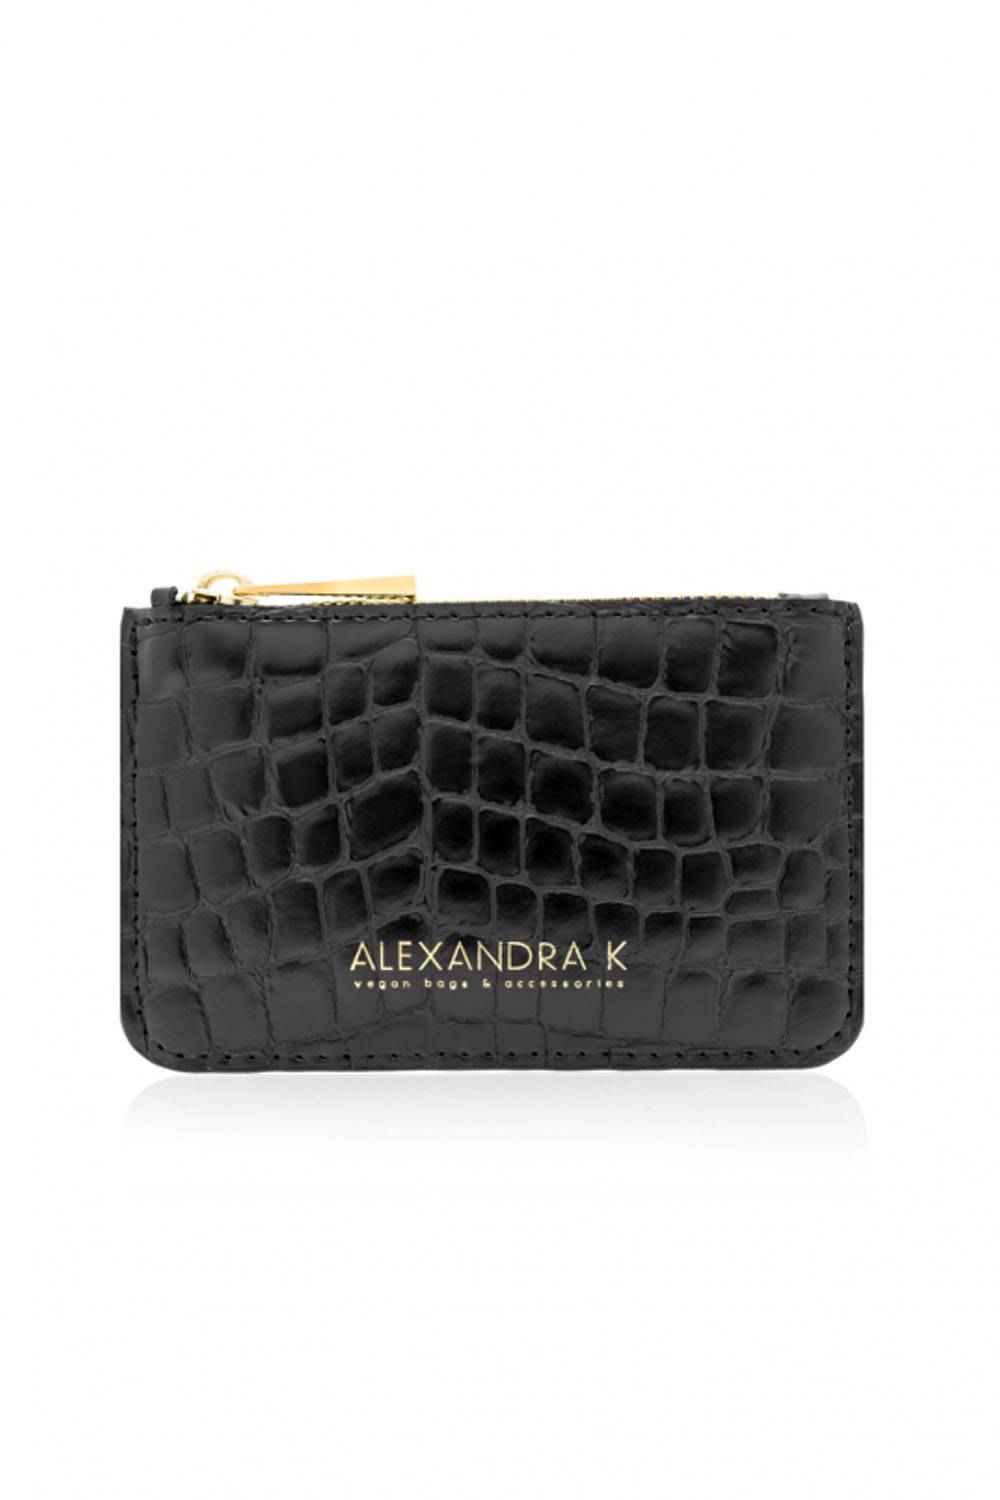 alexandra k vegan leather wallet